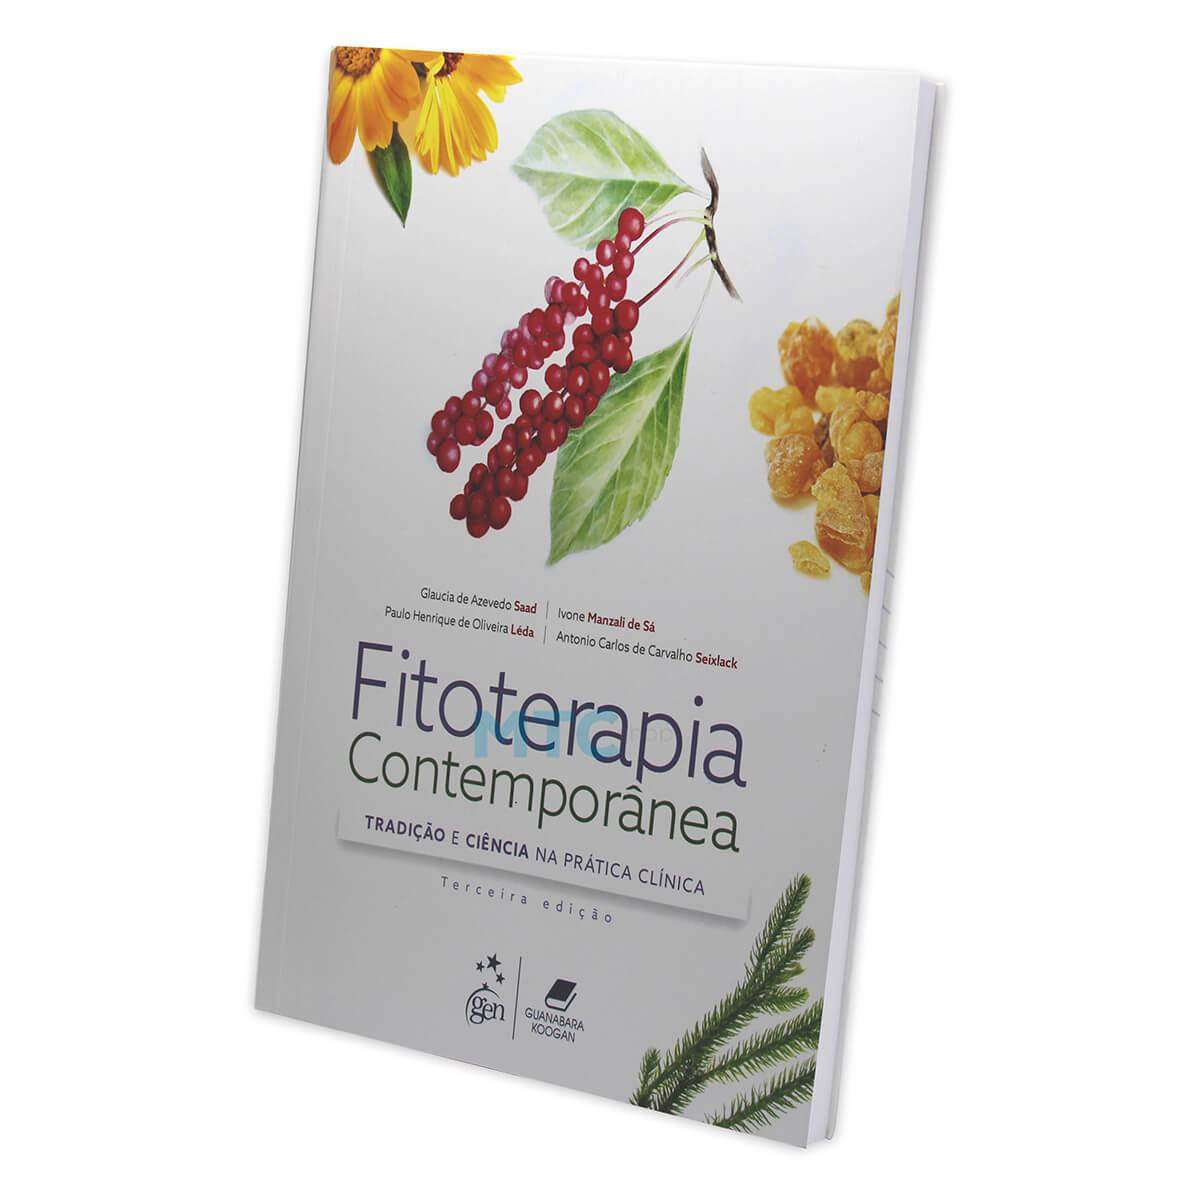 Fitoterapia Contemporânea - Tradição e Ciência na Prática Clínica - Ed. Guanabara Koogan